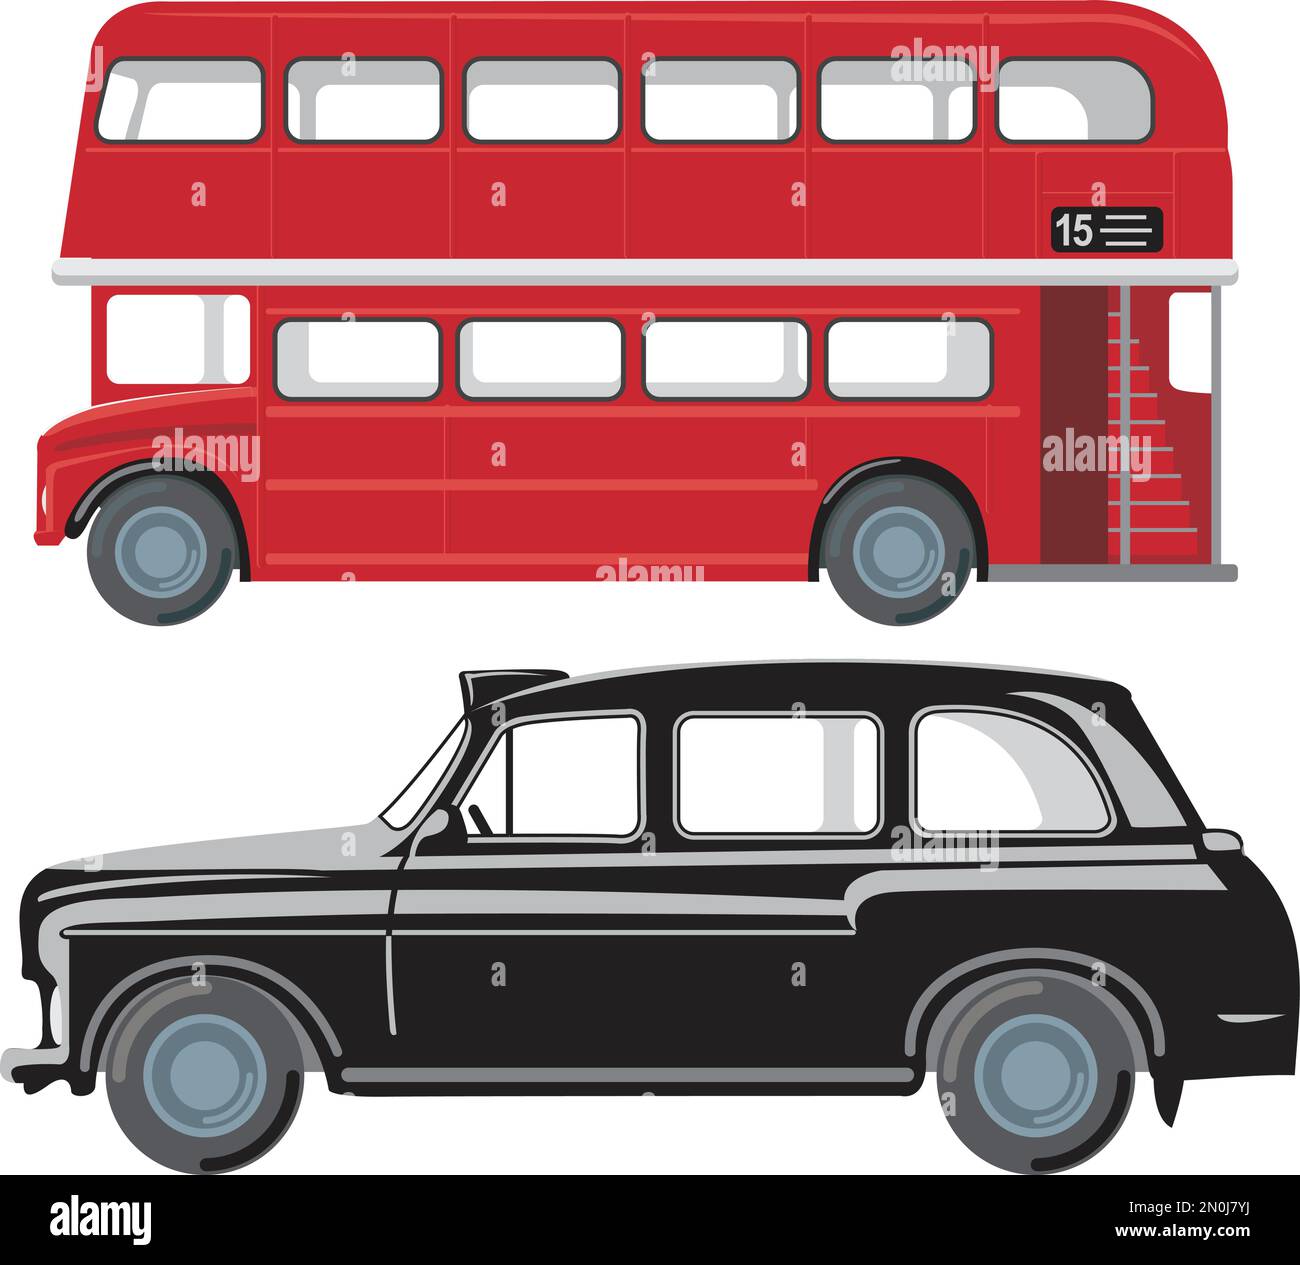 Transporte público de Londres. Autobús de dos pisos rojo y cabina negra clásica. Ilustración vectorial plana Ilustración del Vector